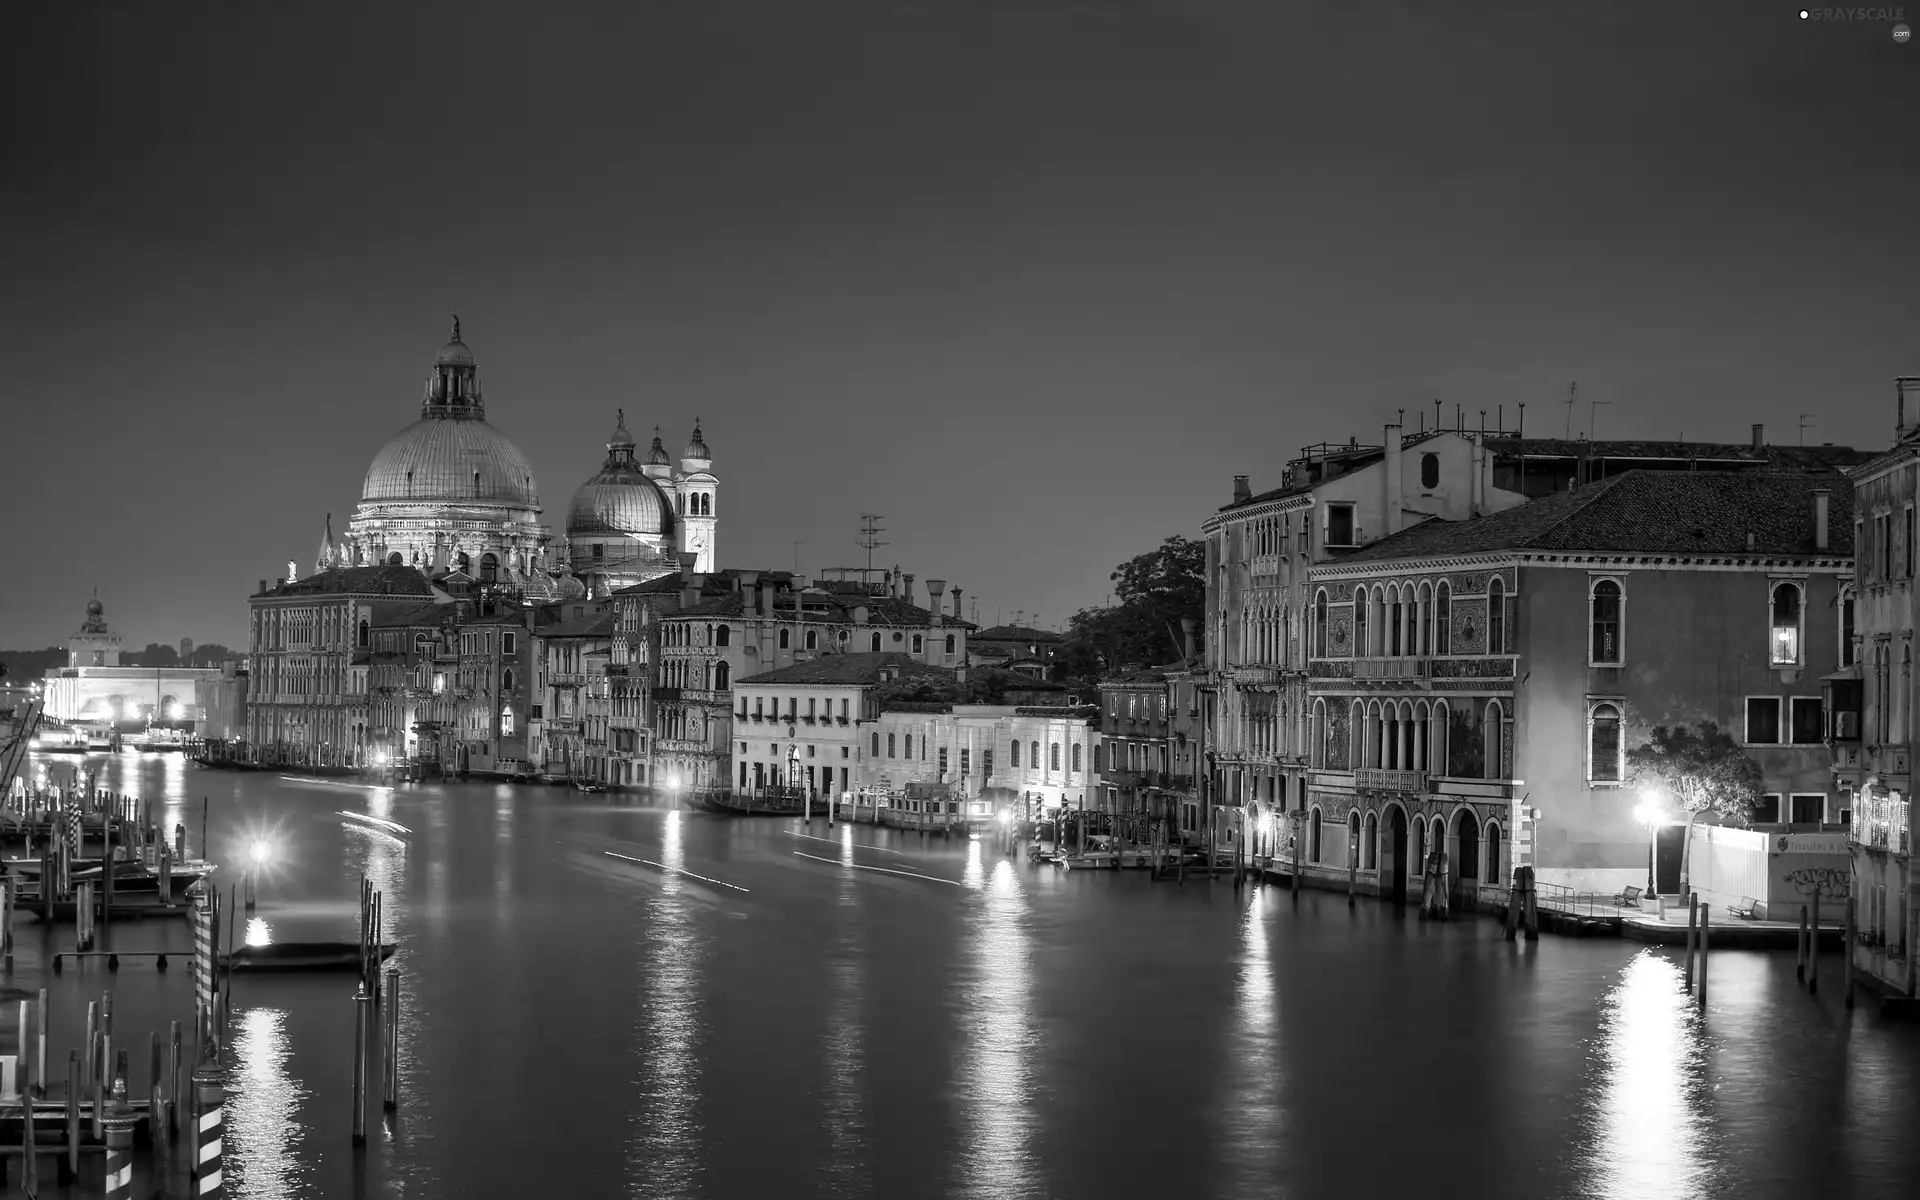 Italy, Venice, Night